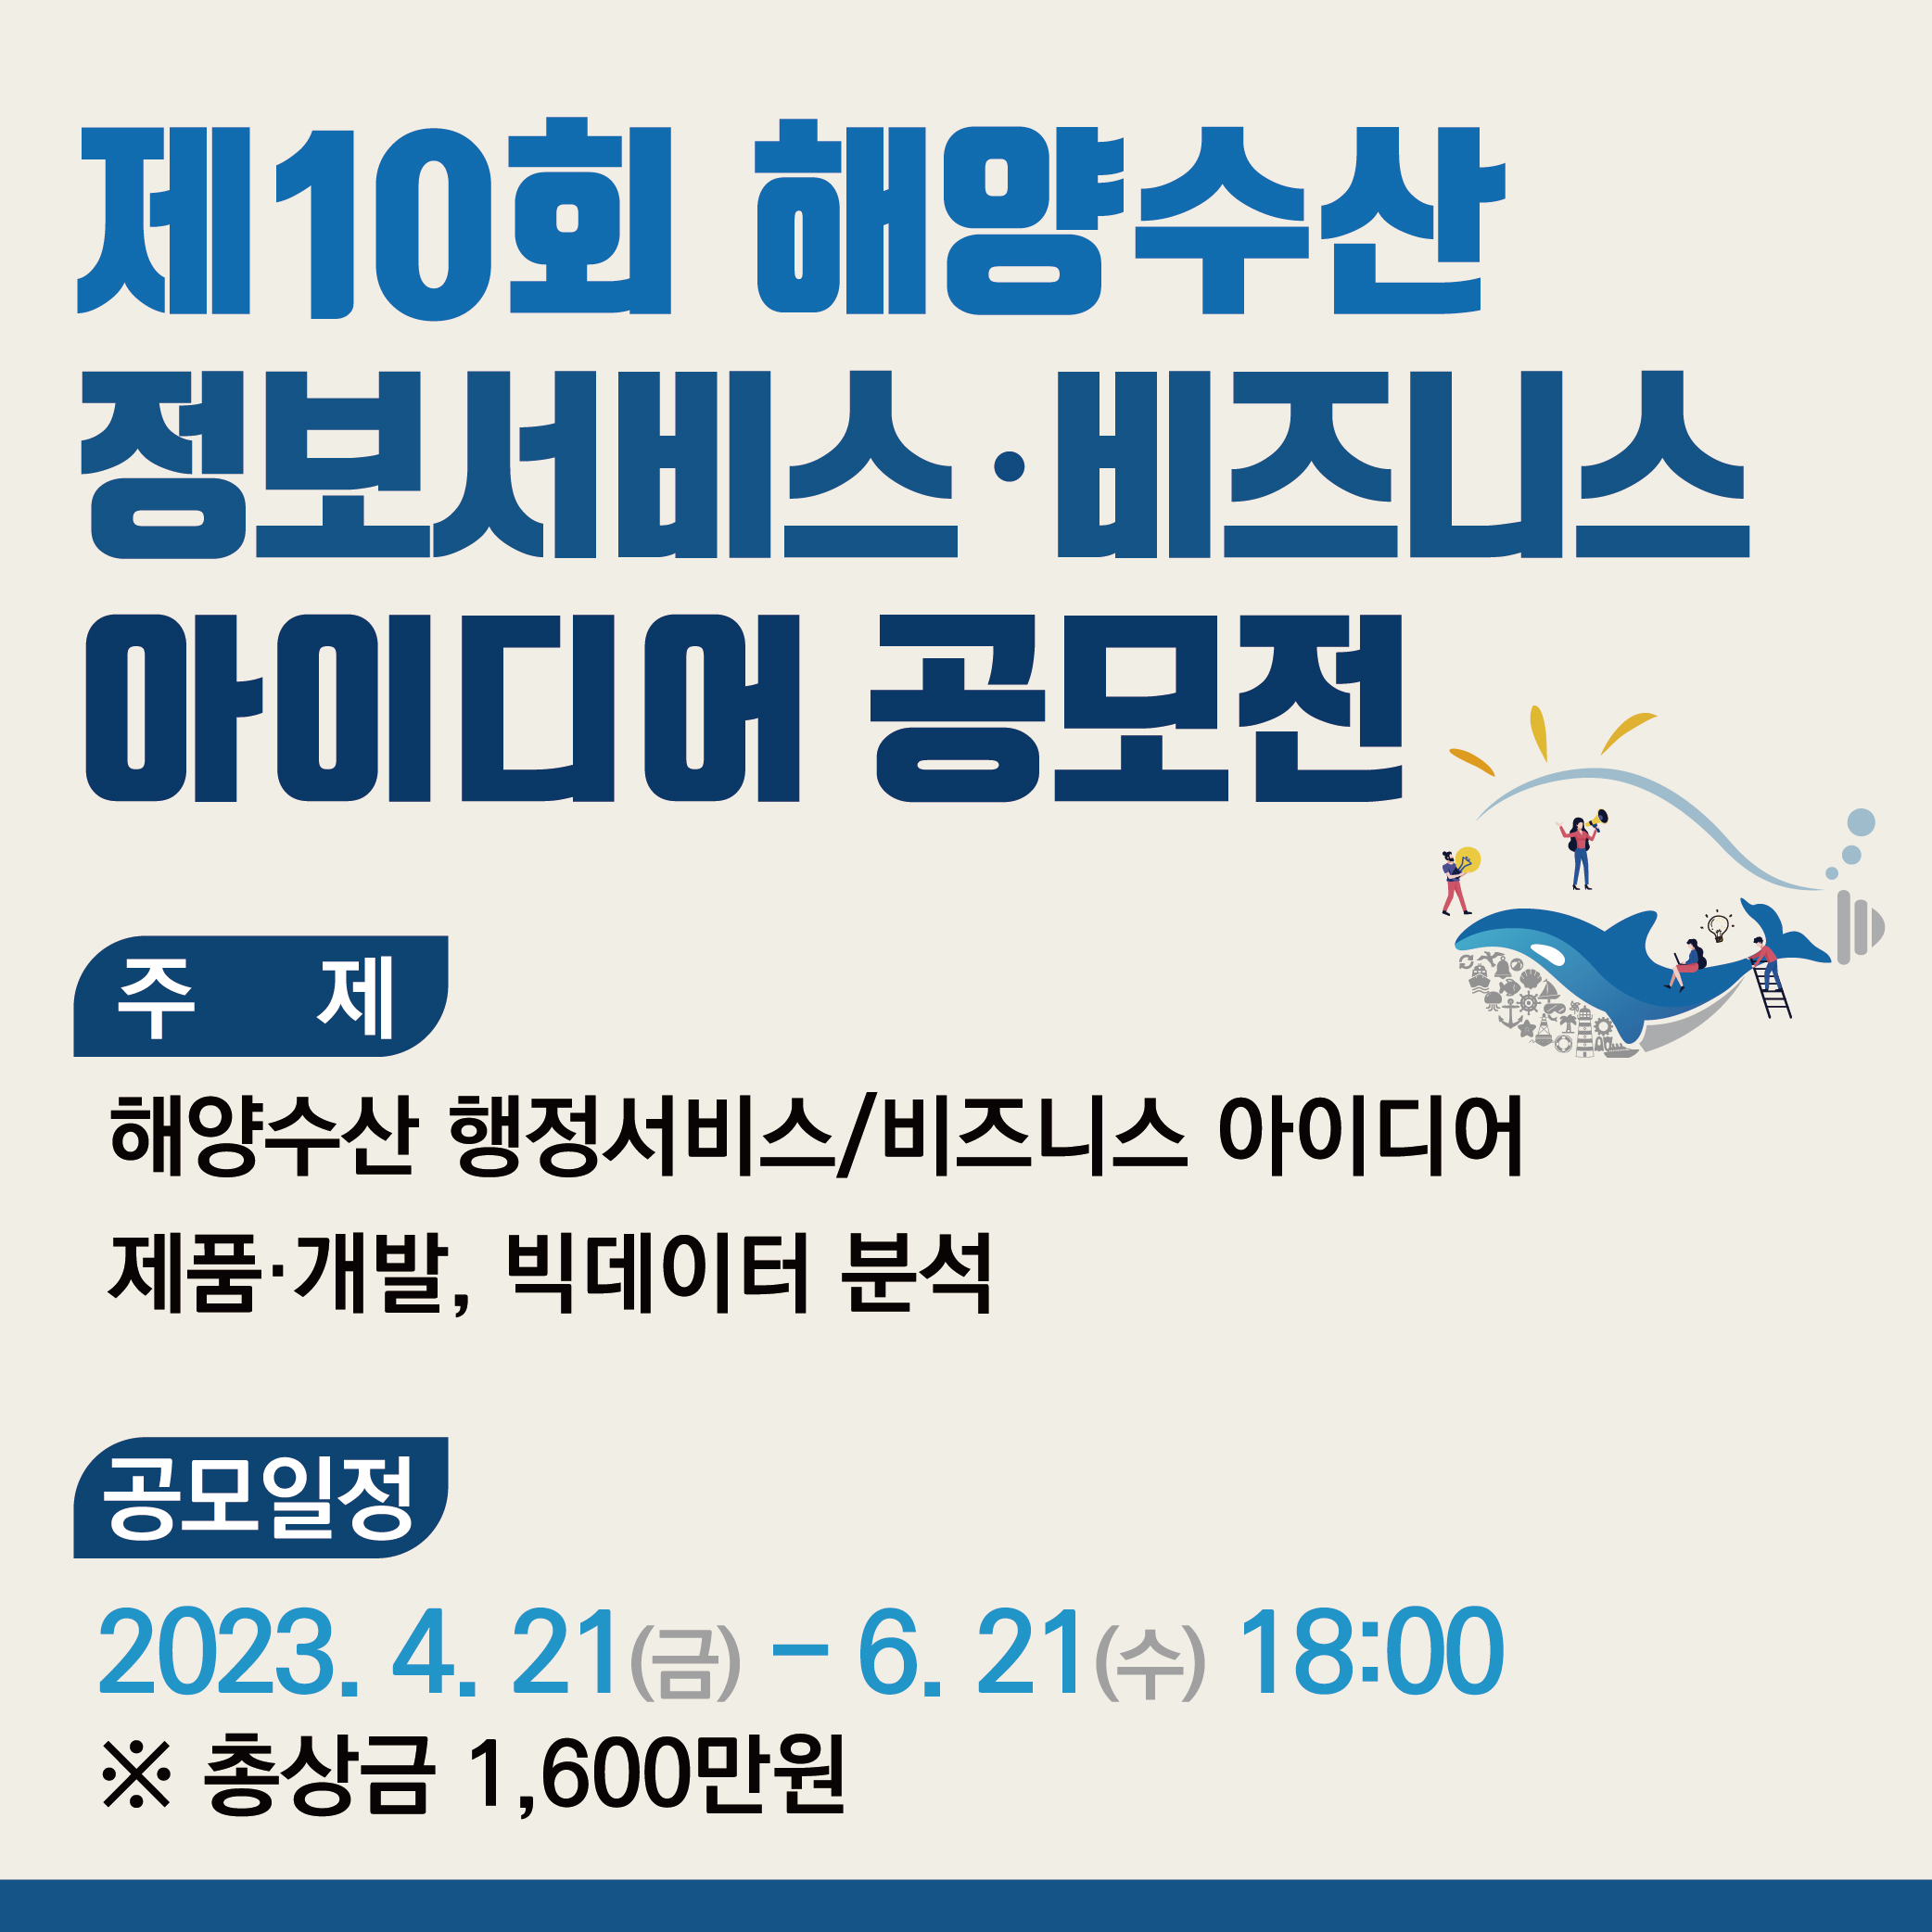 제10회 해양수산 정보서비스&middot;비즈니스 아이디어 공모전 개최